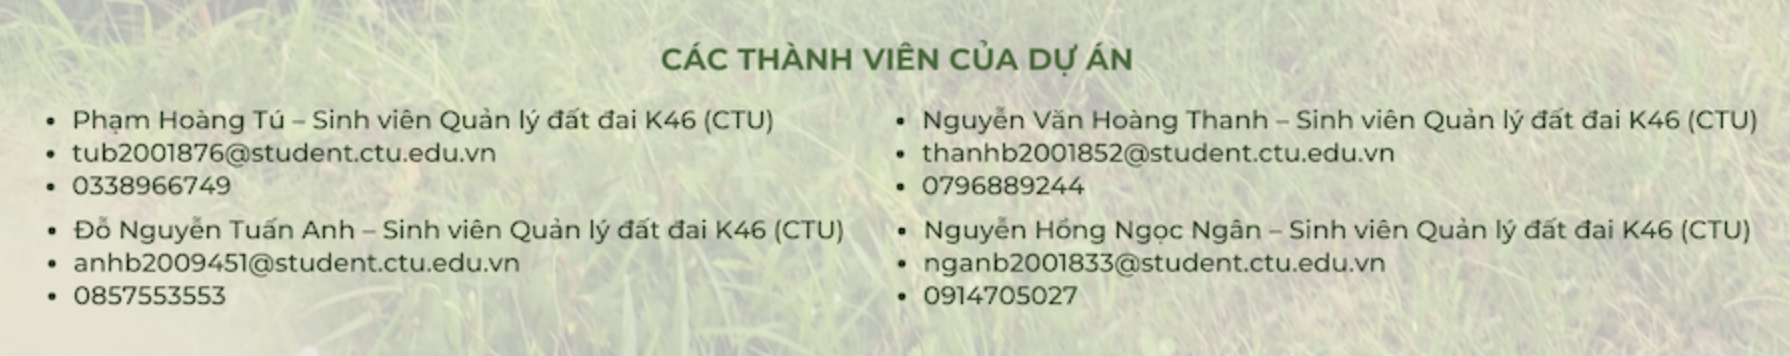 Dự án Nghiên cứu đánh giá tác động của xâm nhập mặn đến sinh kế nông hộ. Trường hợp nghiên cứu tại huyện Tân Phú Đông, tỉnh Tiền Giang